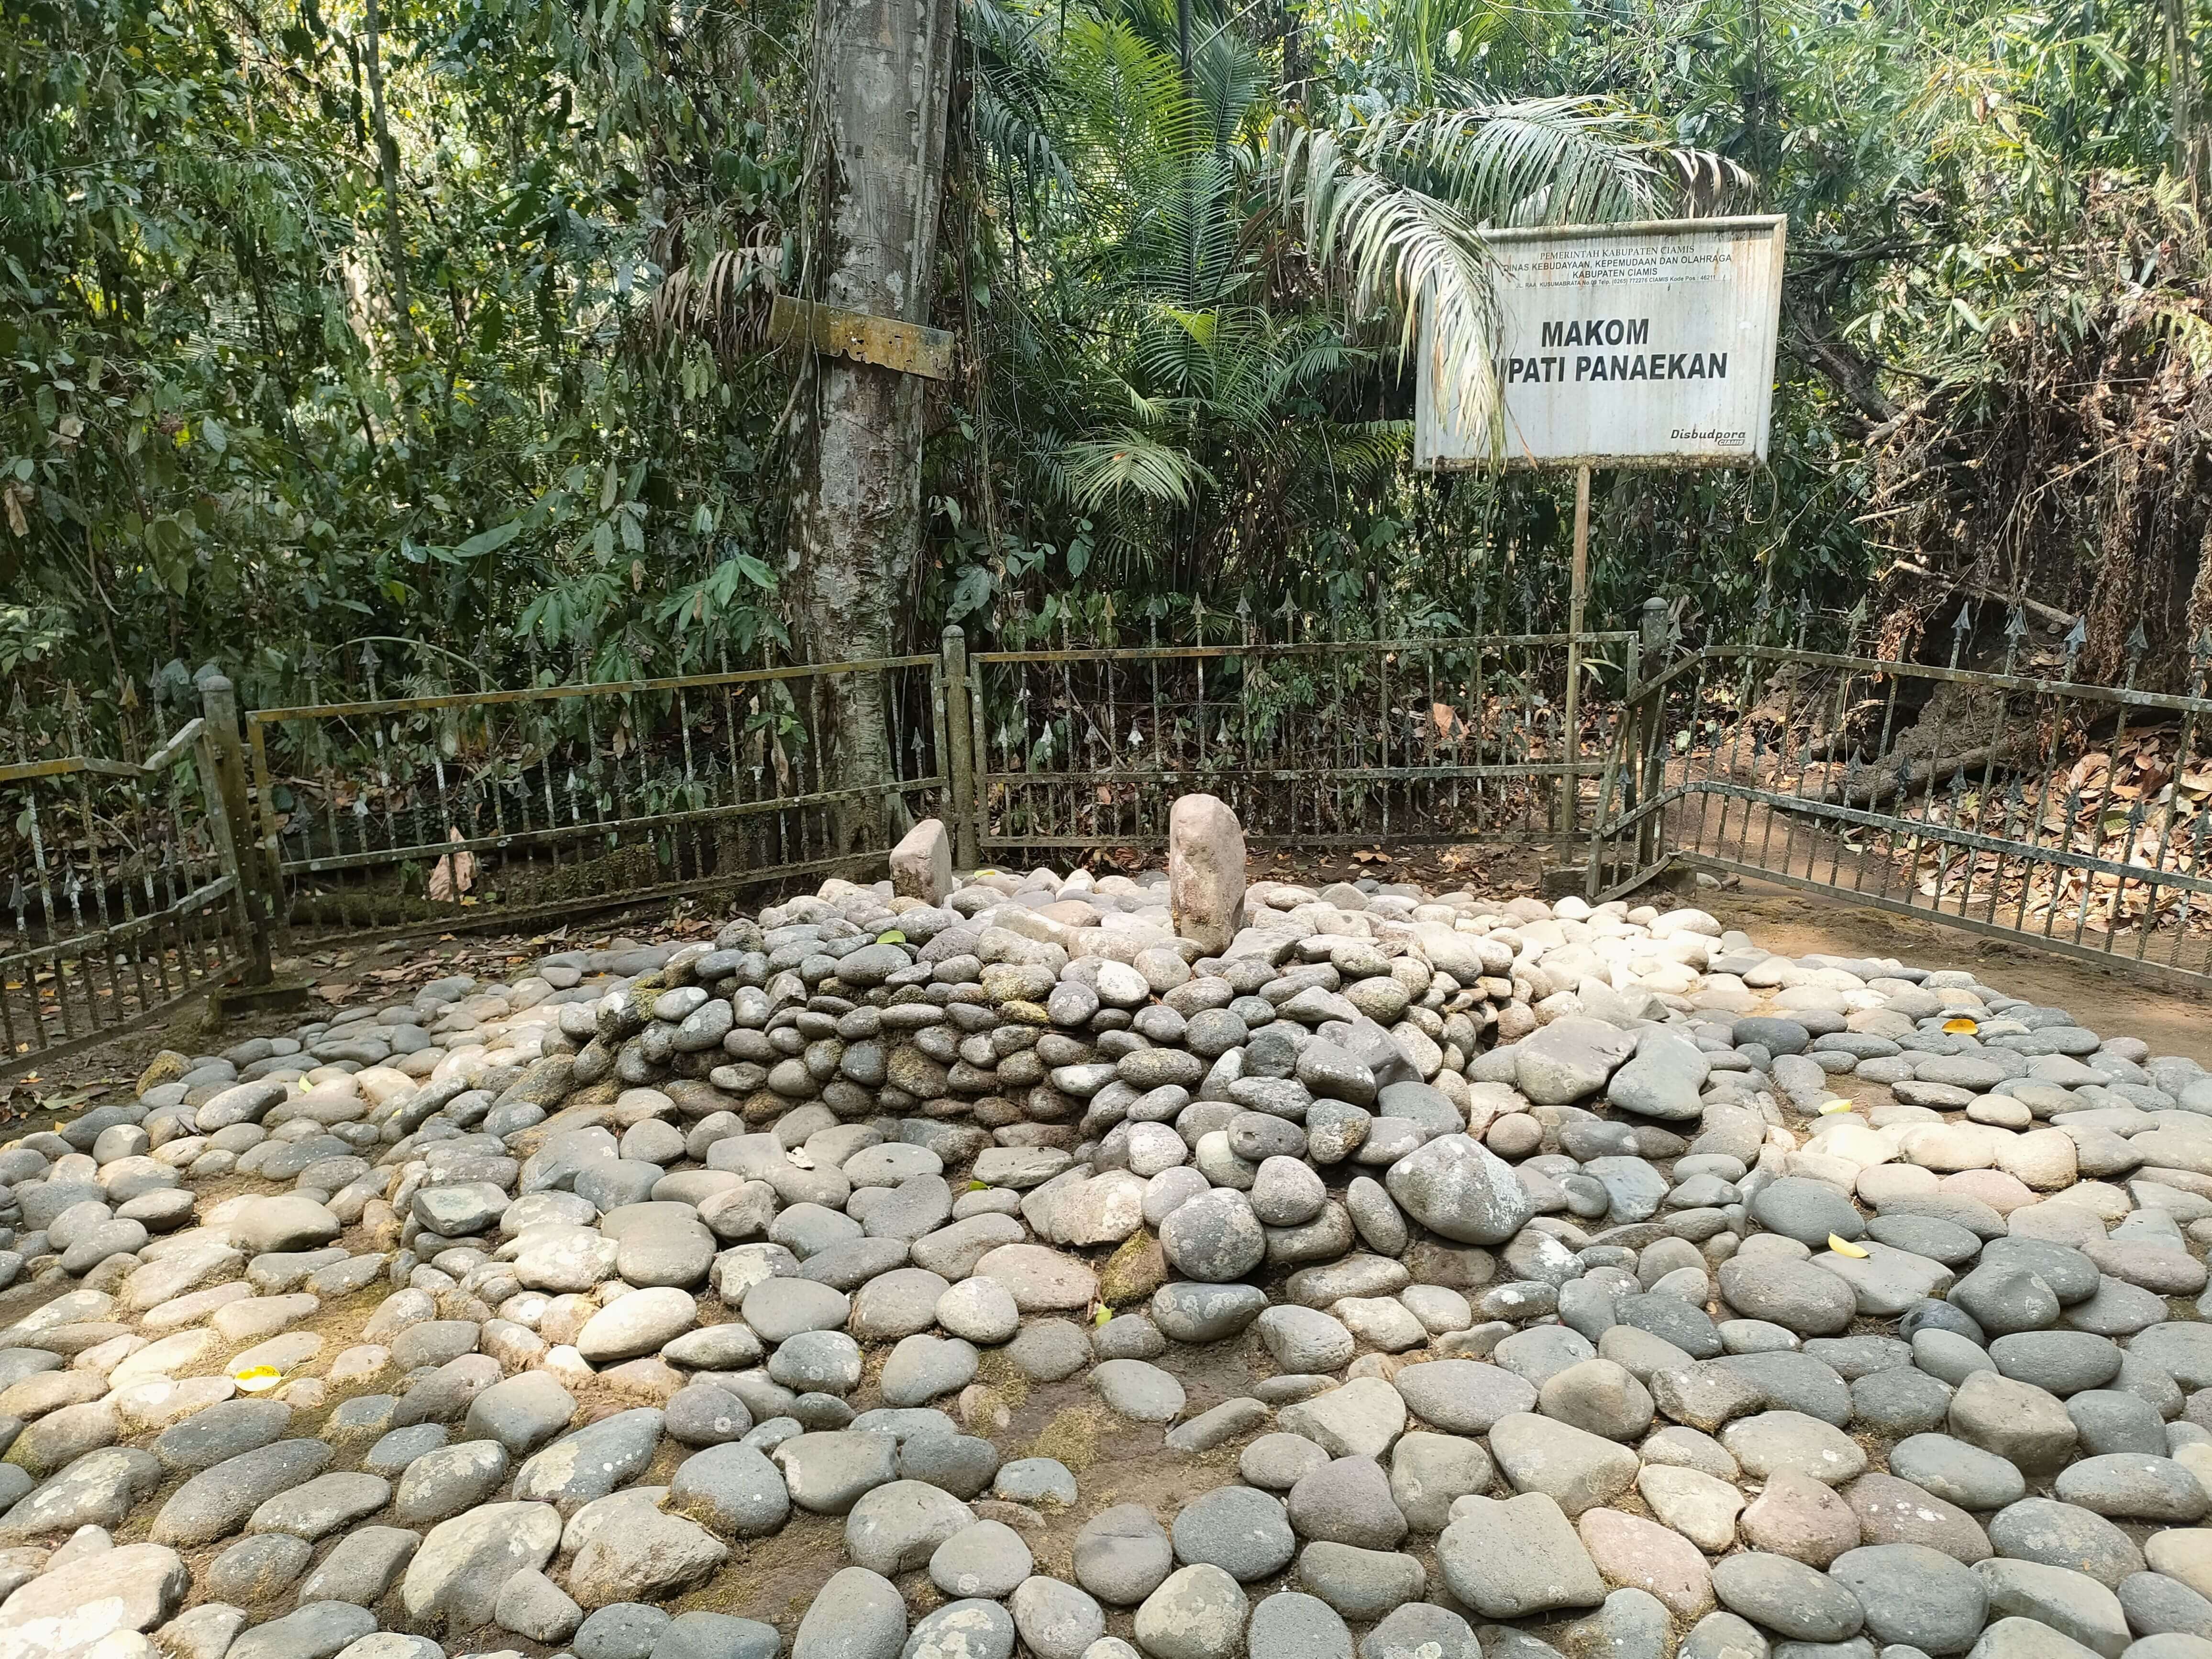 Adipati Panaekan Menyerang VOC di Batavia Berujung Tragis, Makamnya di Kawasan Hutan Seluas 25,5 Hektar 